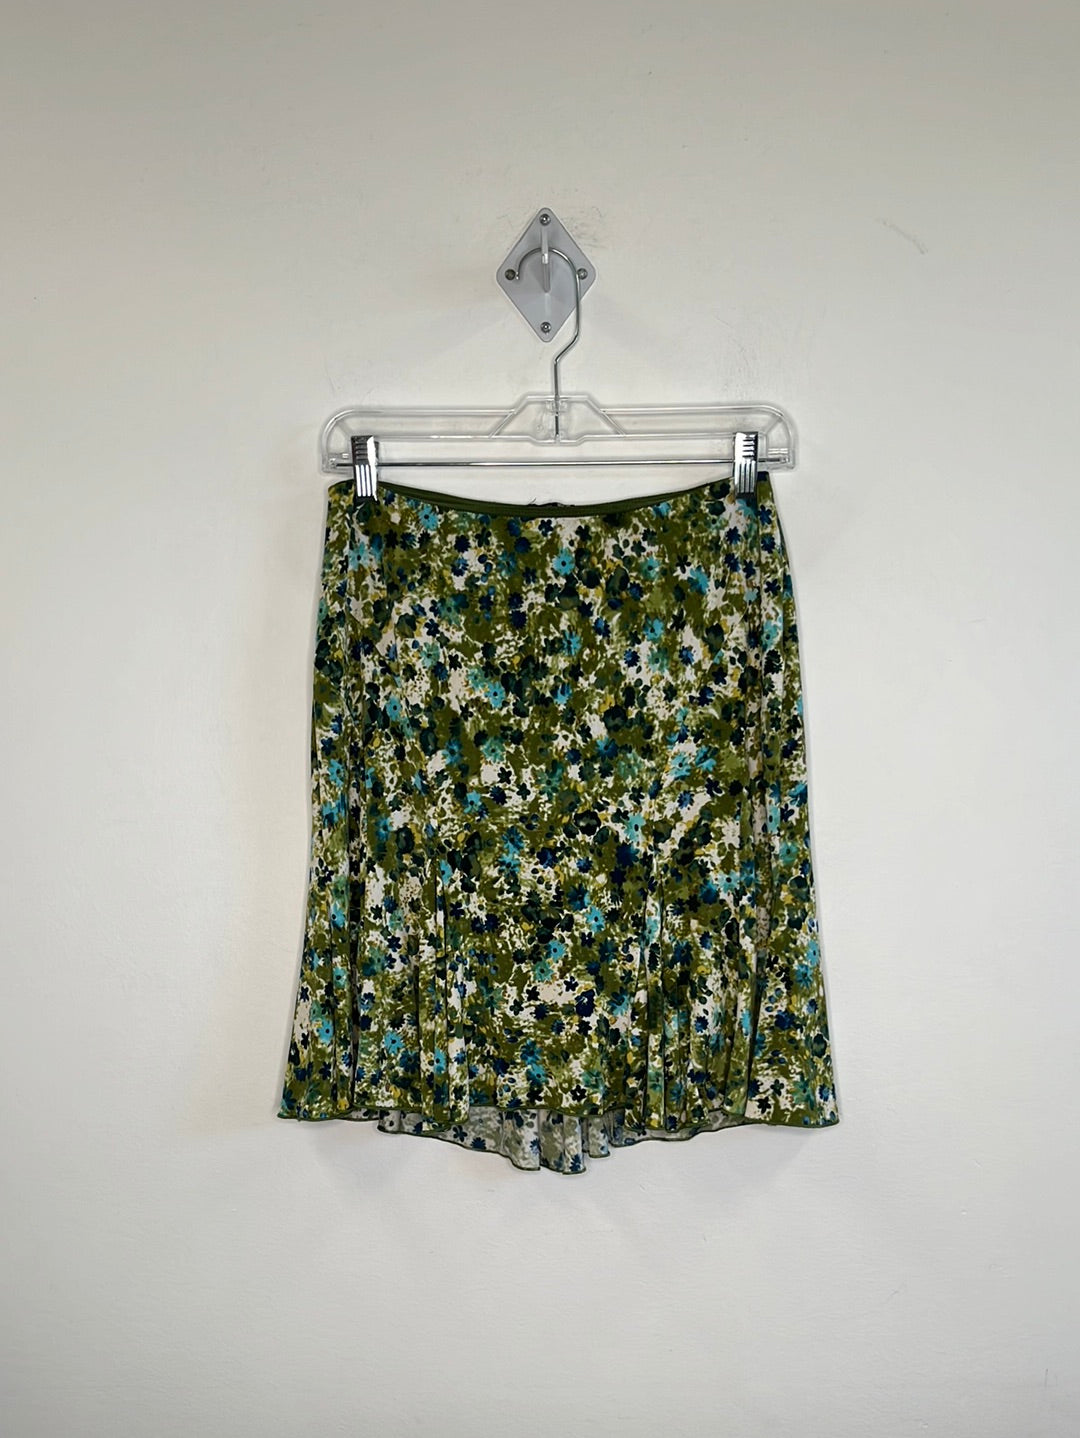 Retro Lily Floral Mini Godet Skirt (S)